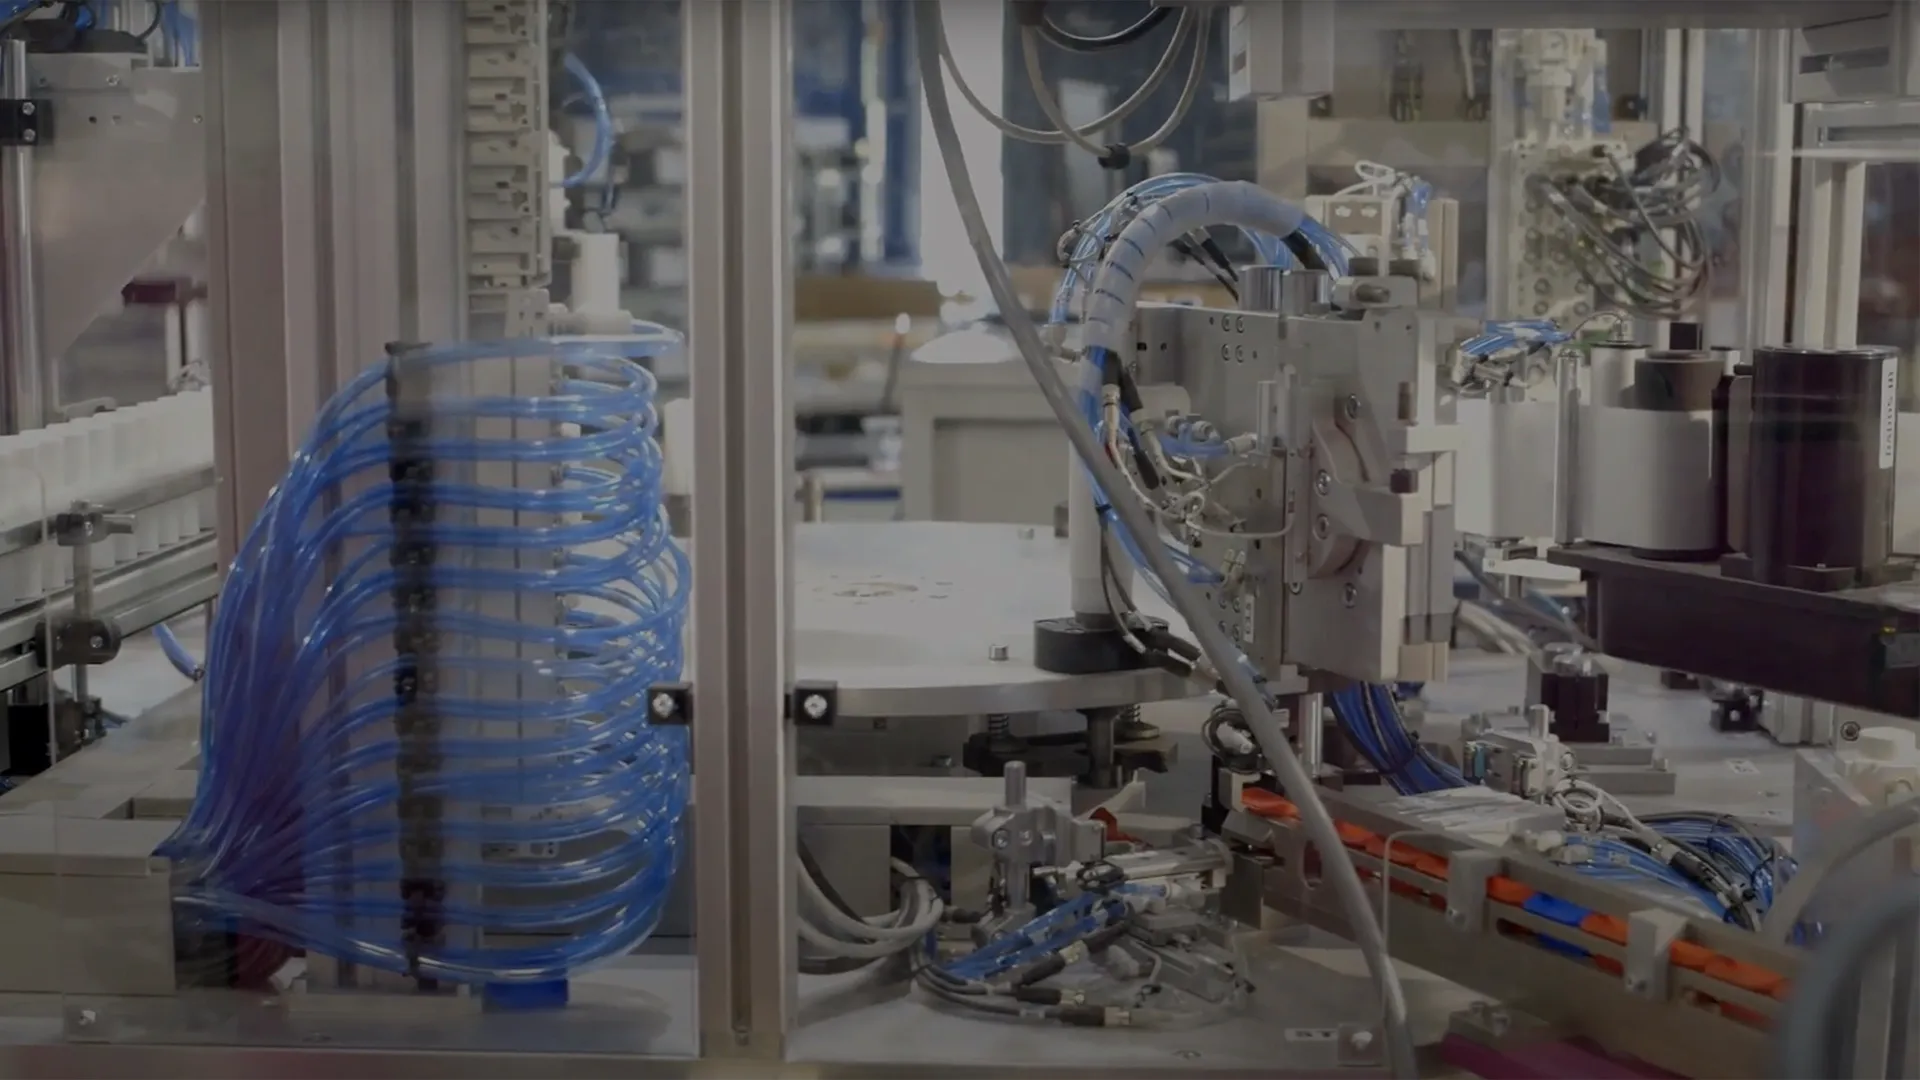 vídeo de um processo industrial inovador na fábrica da siroco